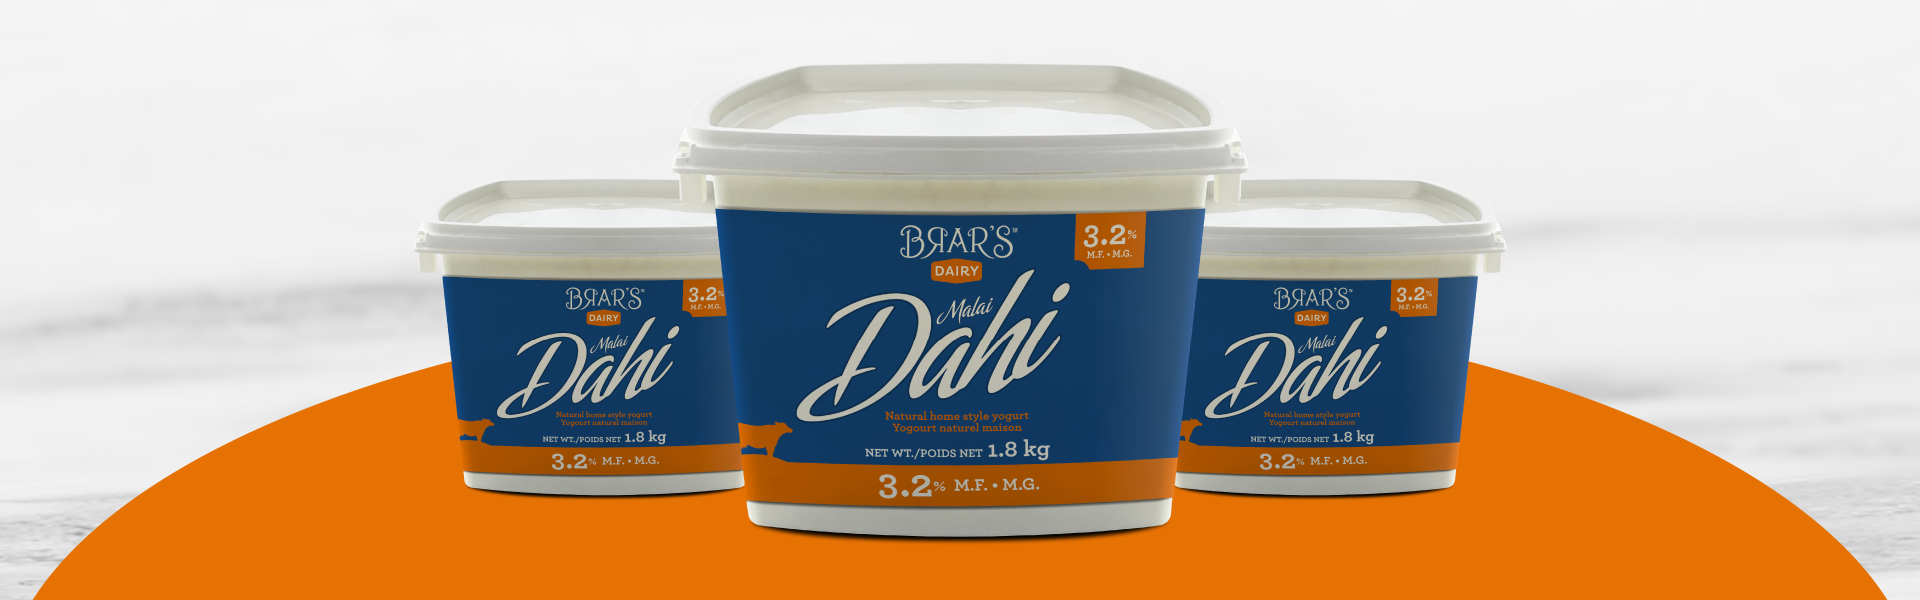 Brar's - Dahi 3.2% 1.8kg